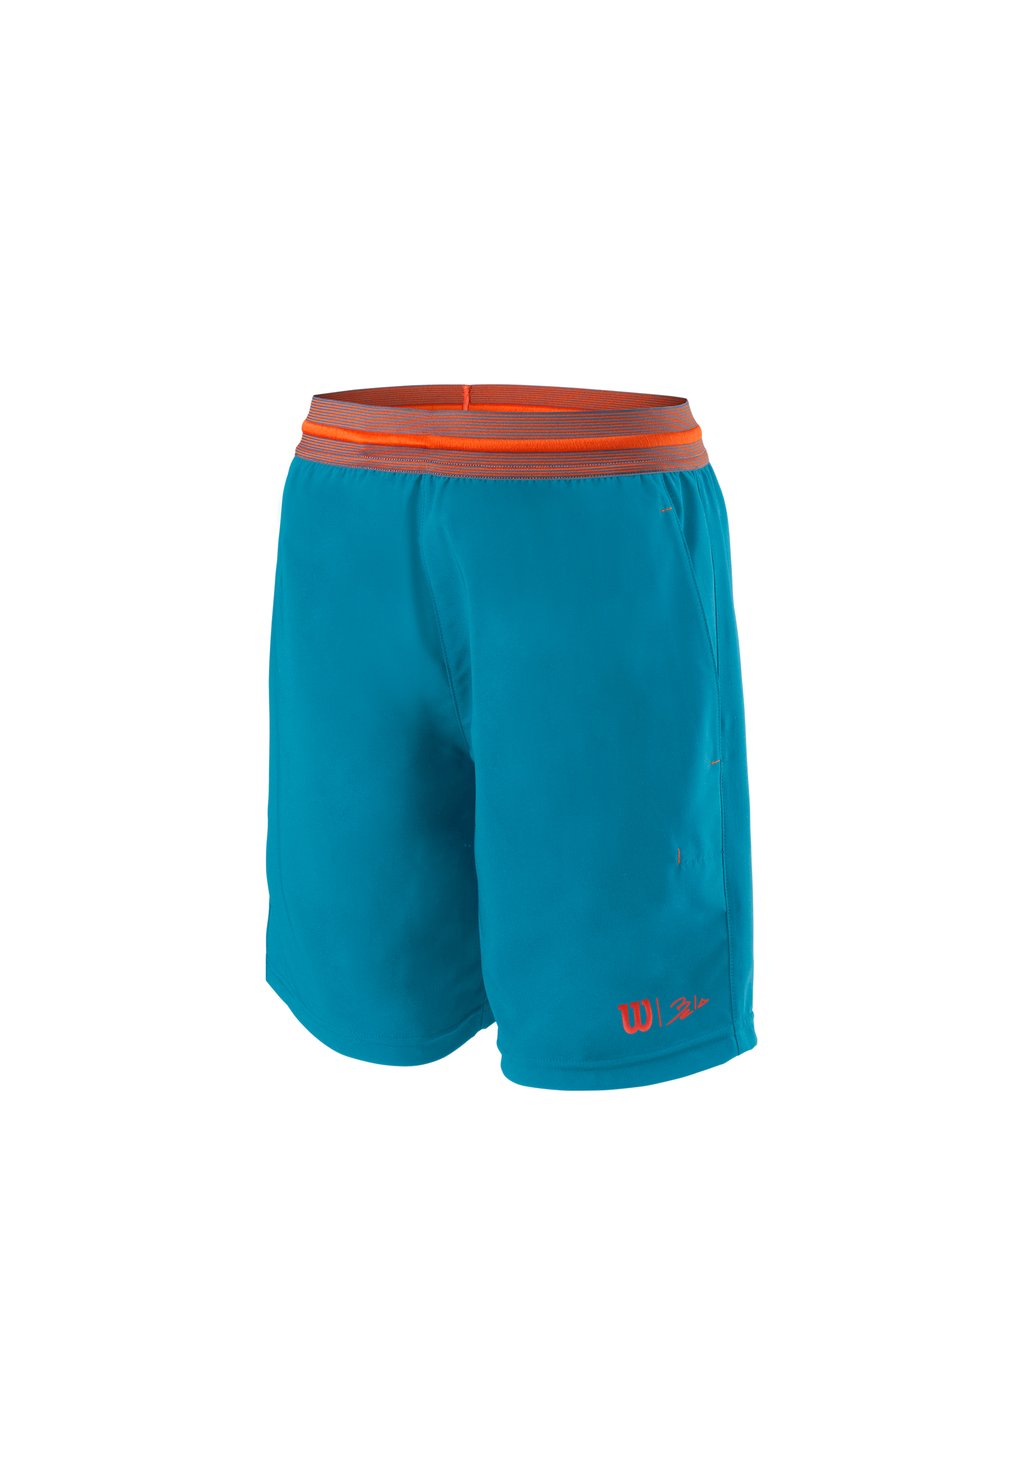 Короткие спортивные брюки WILSON BELA 7 II, цвет blau orange